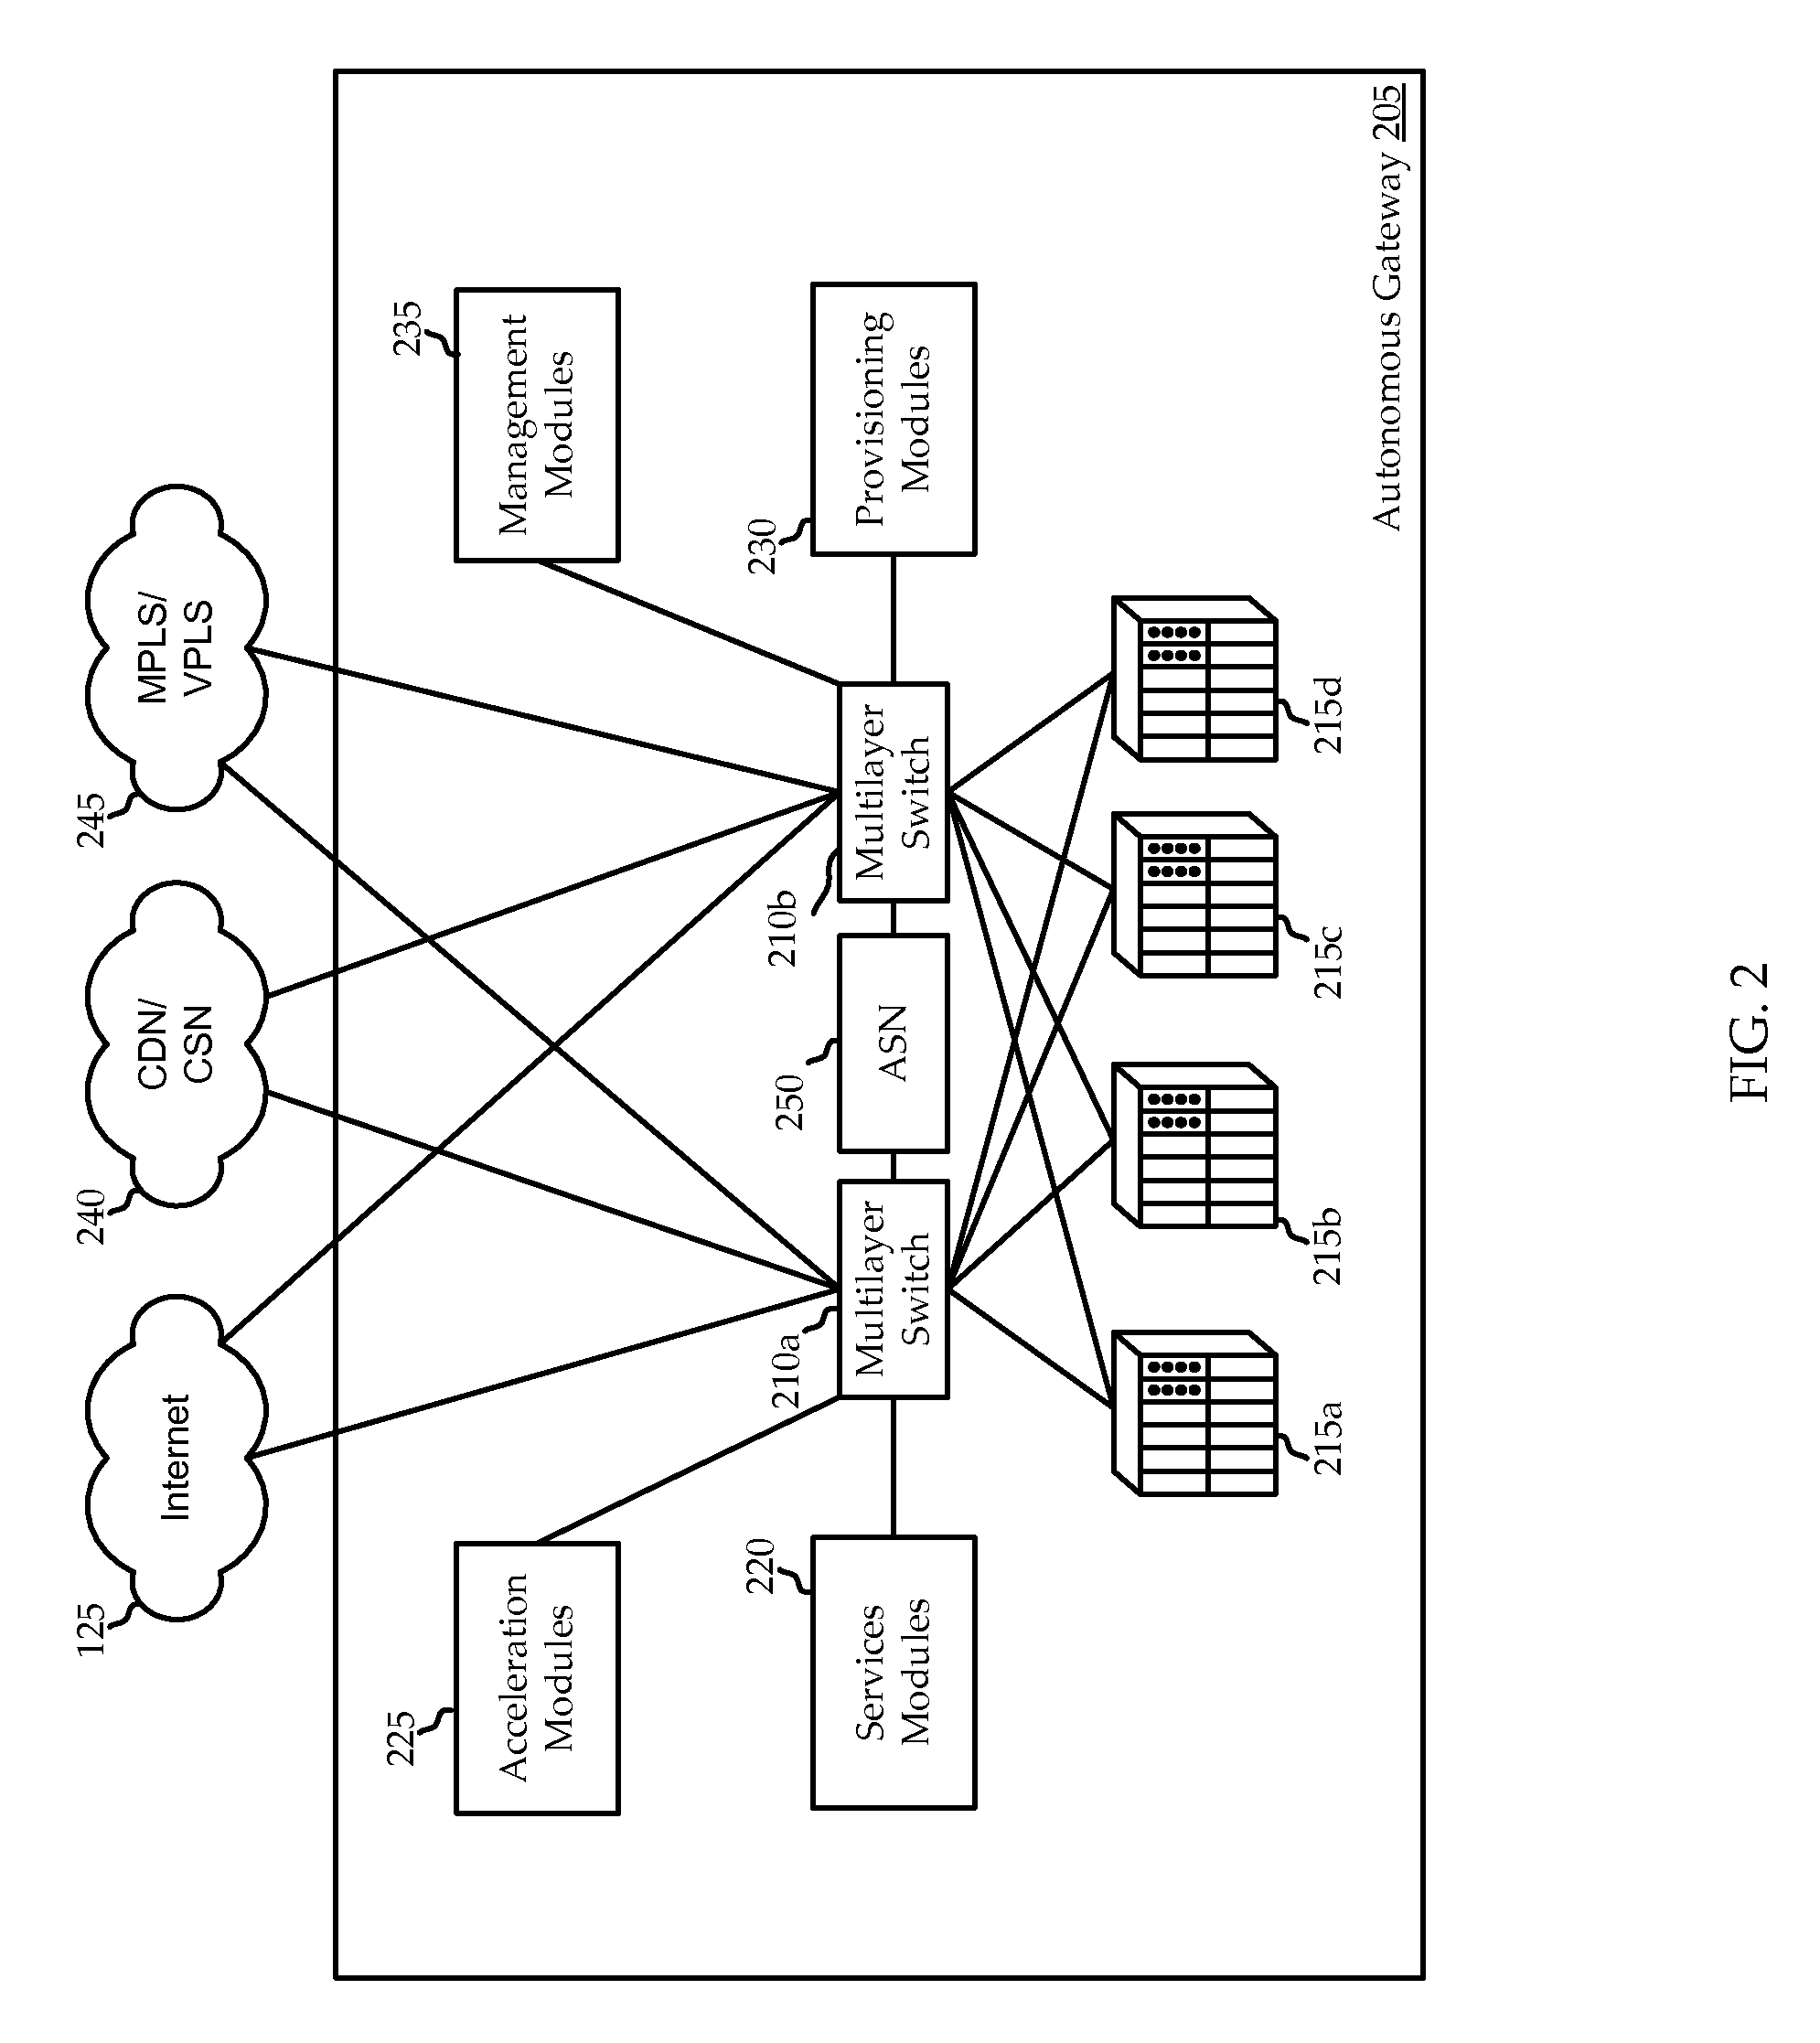 Core-based satellite network architecture